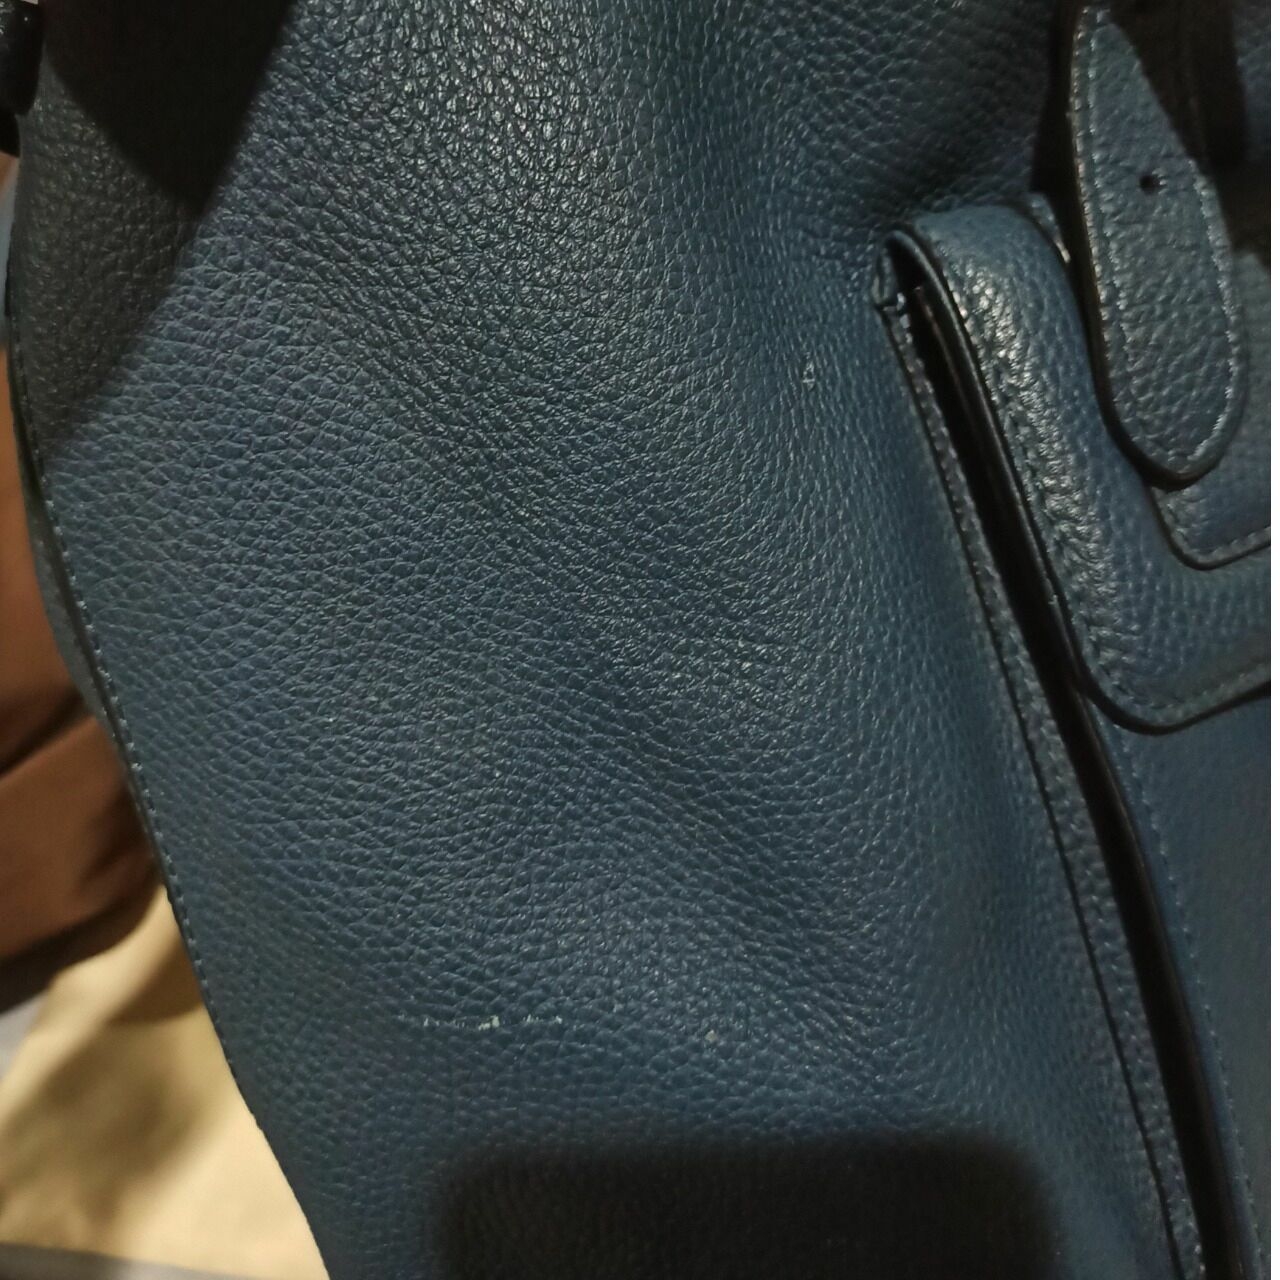 Braun Buffel Blue Handbag